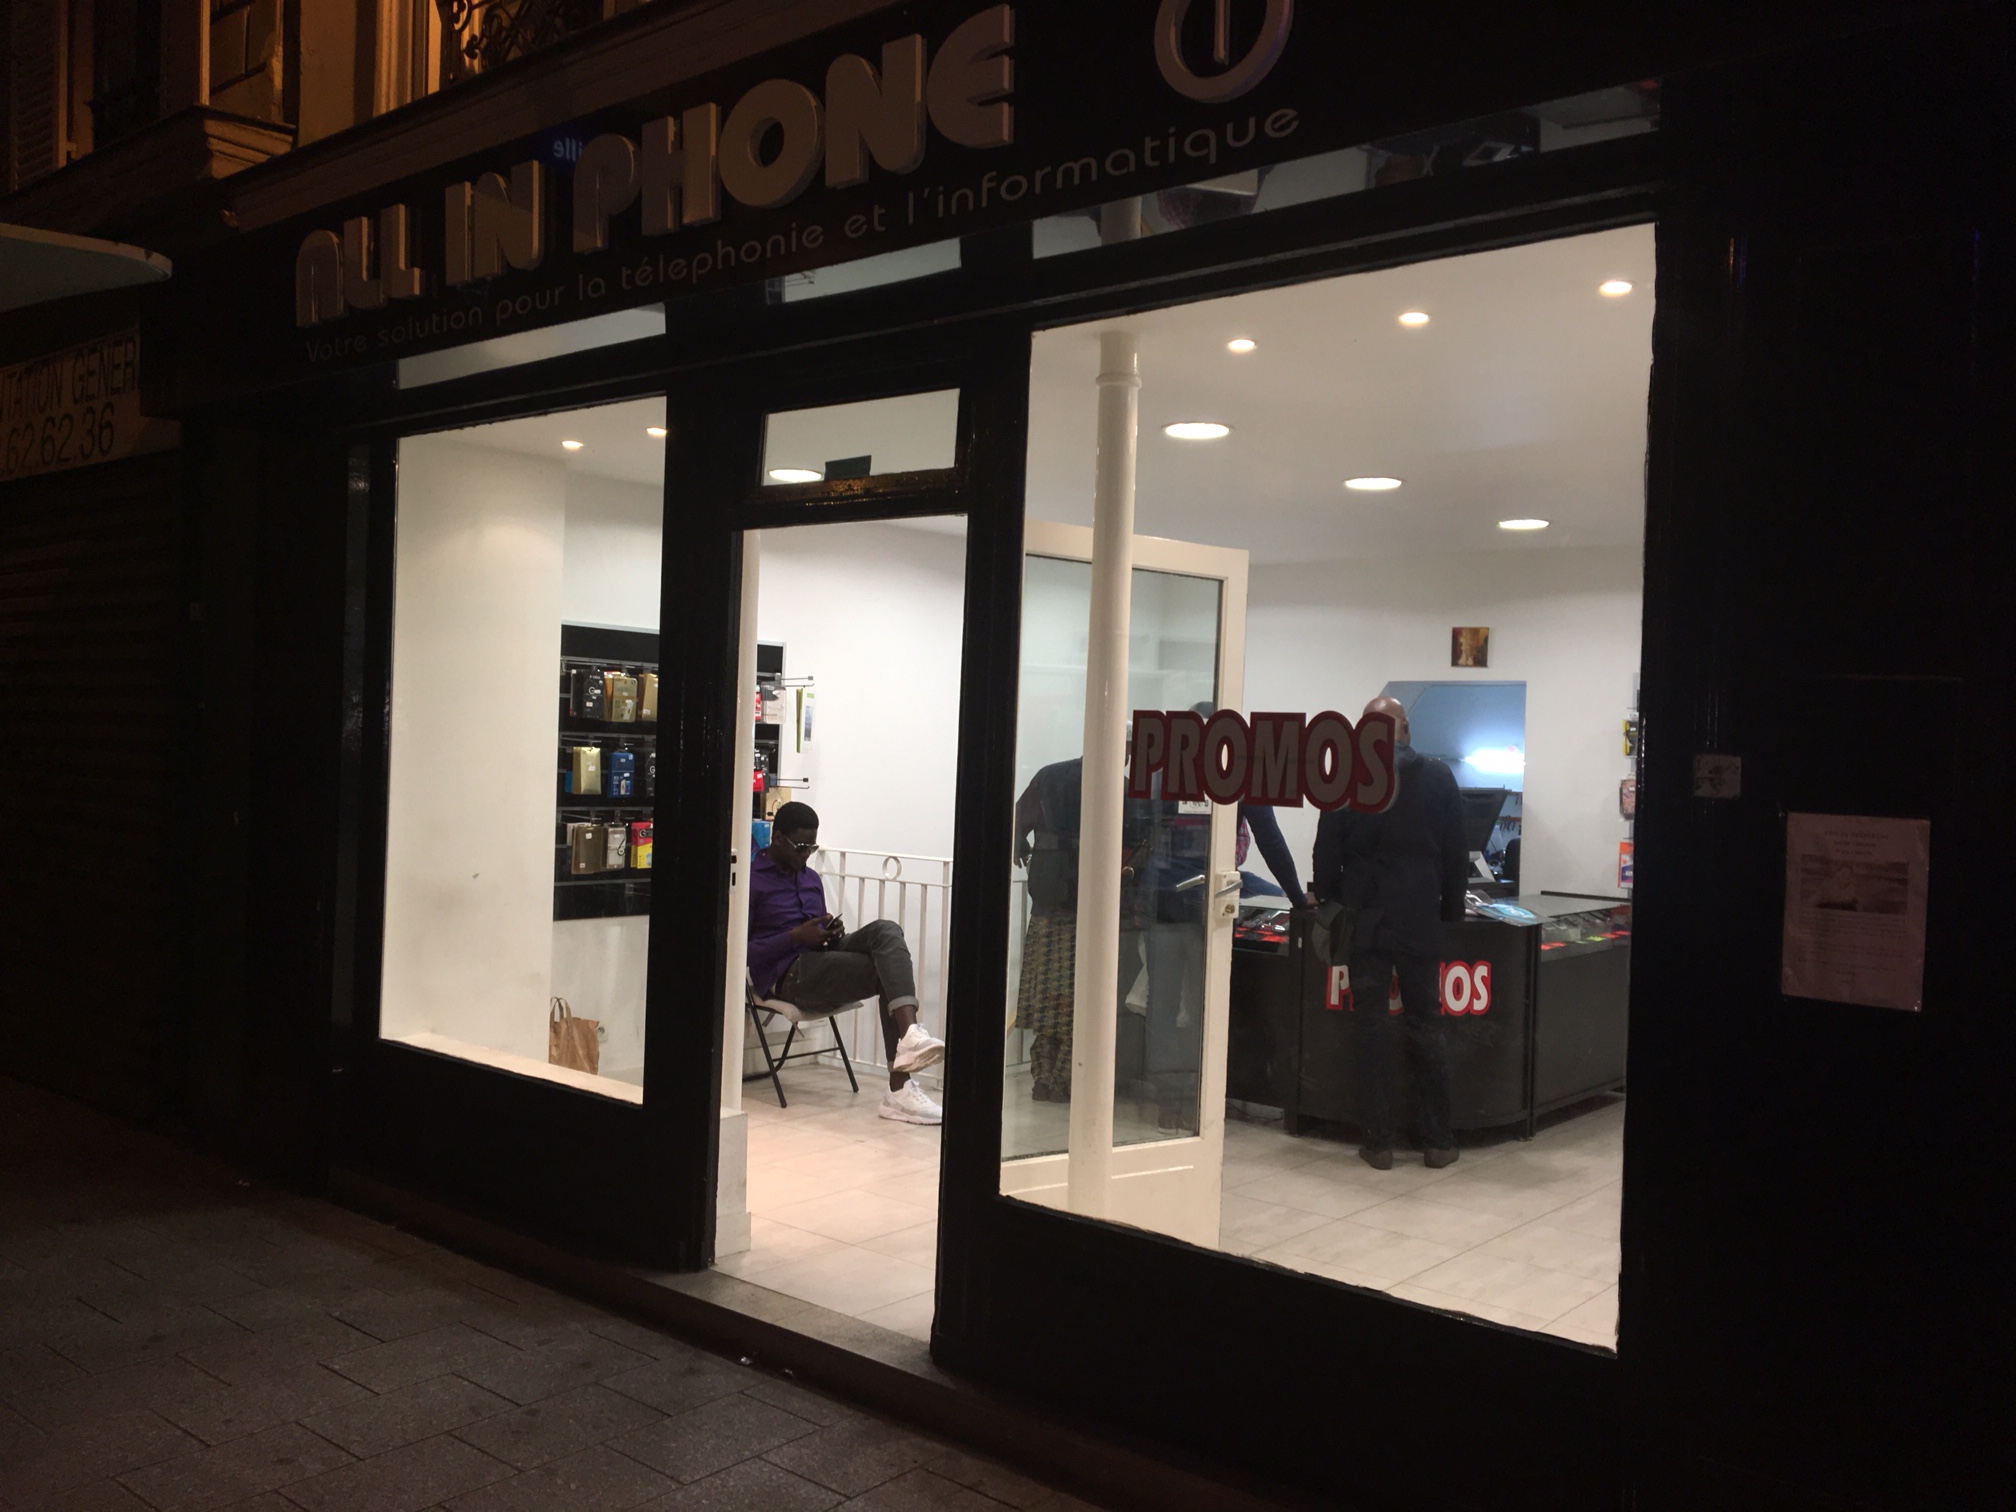 All in Phone chez Ahmeth Sarr : Votre solution en téléphonie et informatique à PARIS